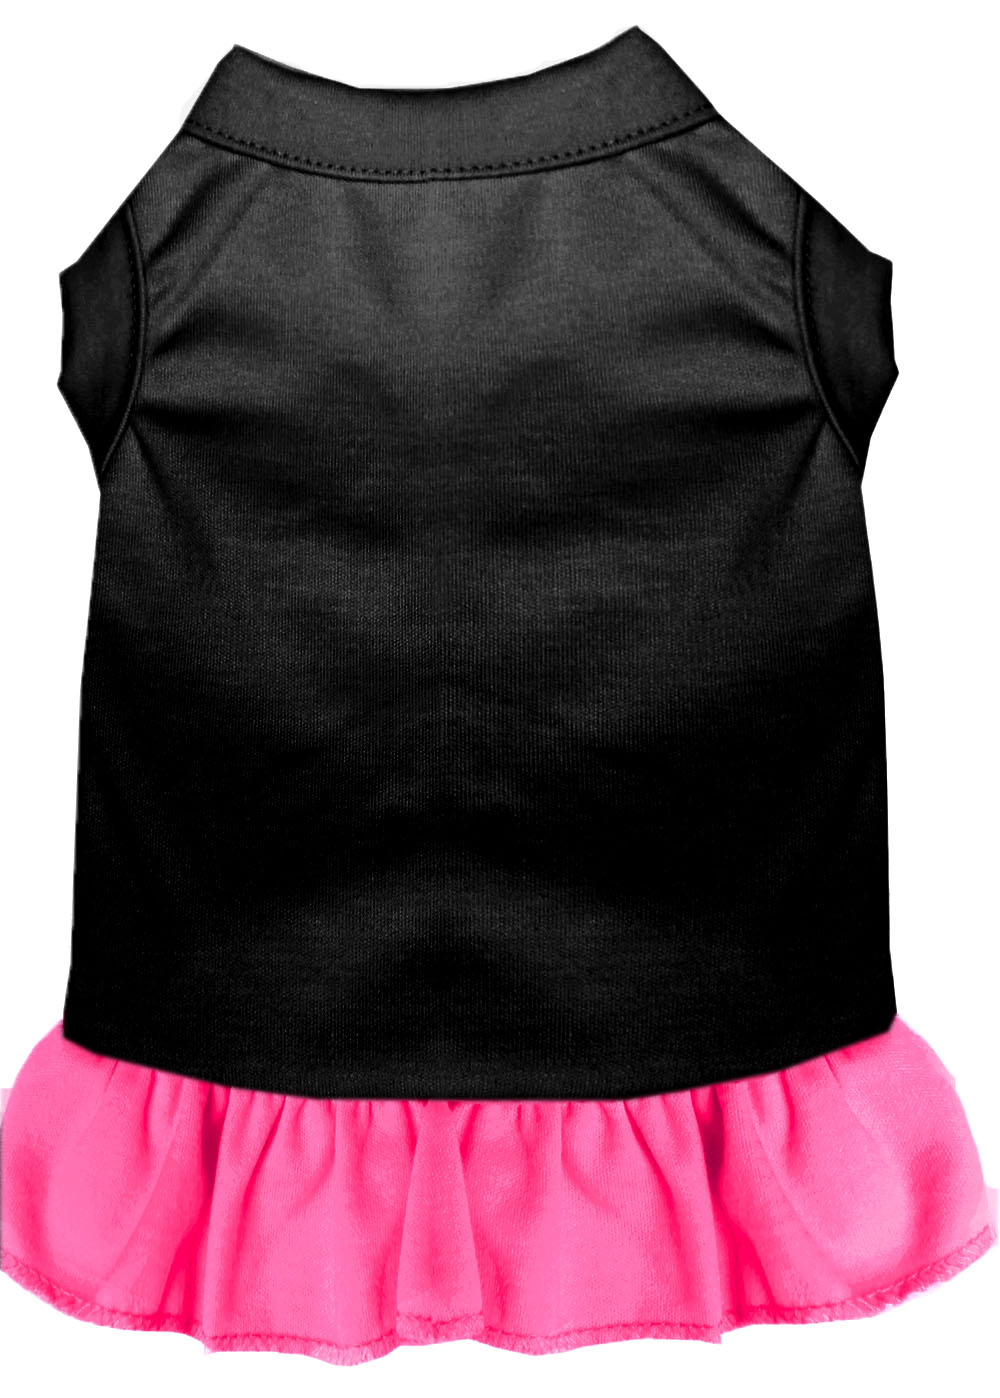 Plain Pet Dress Black with Bright Pink XXL